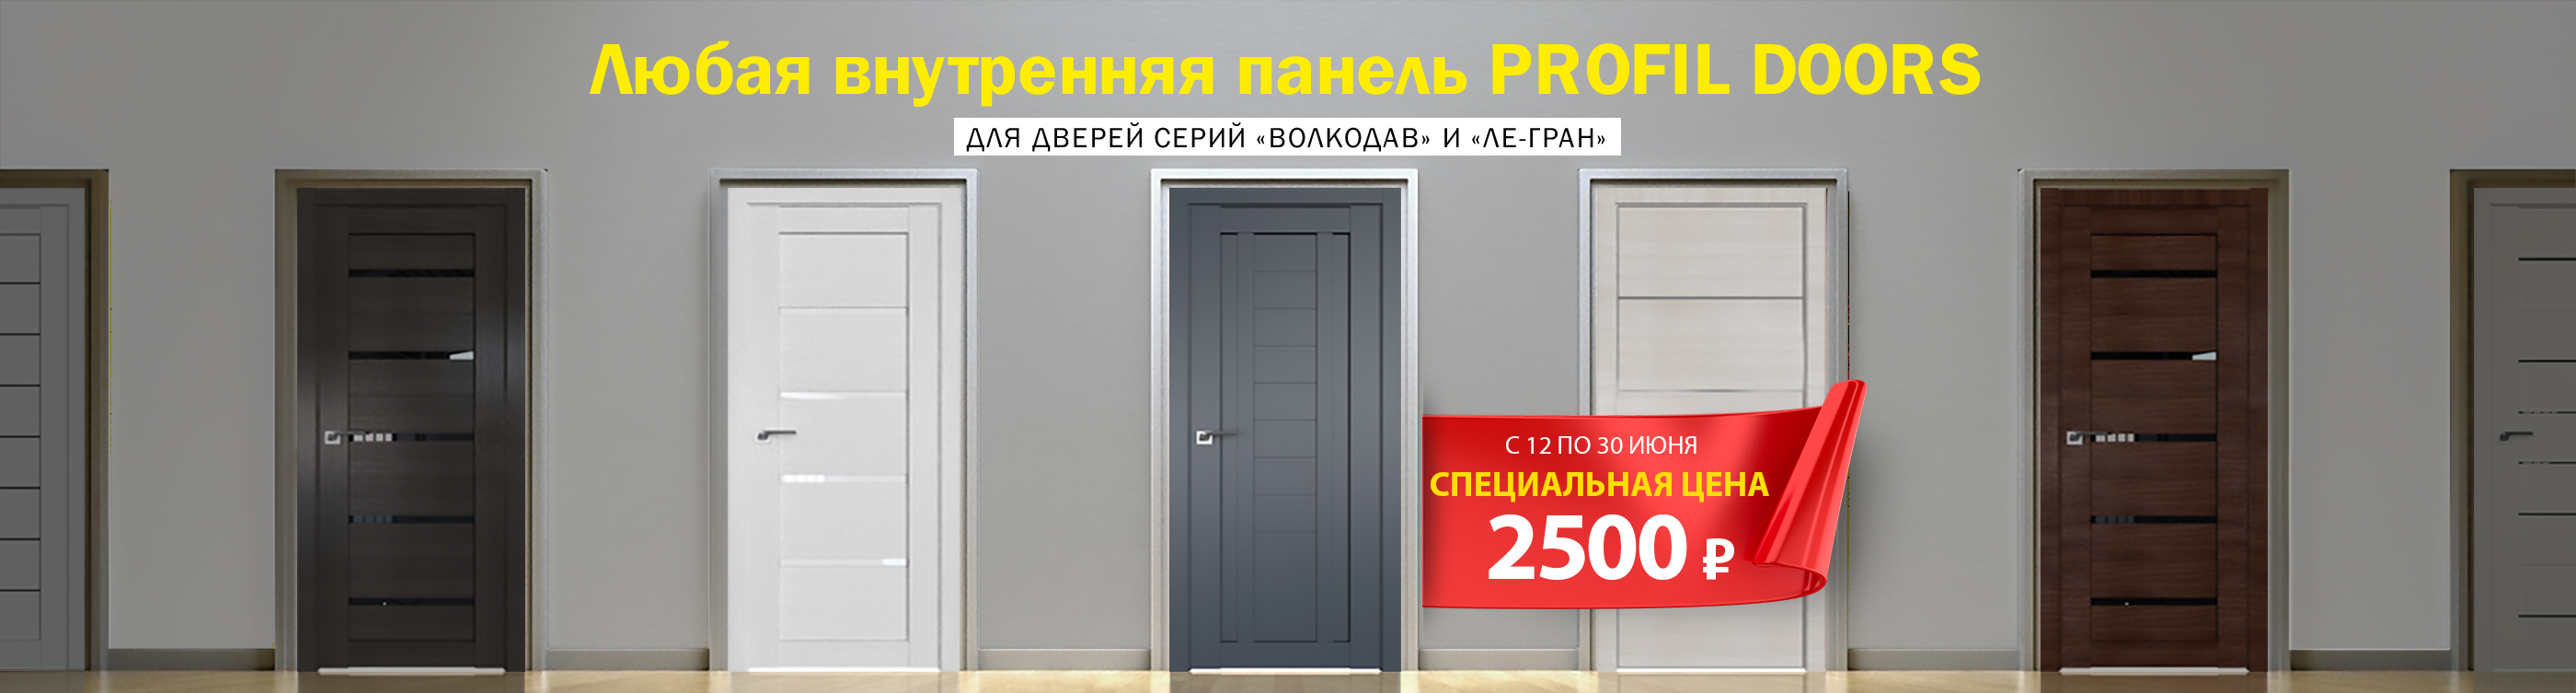 Распродажа панелей Profil Doors